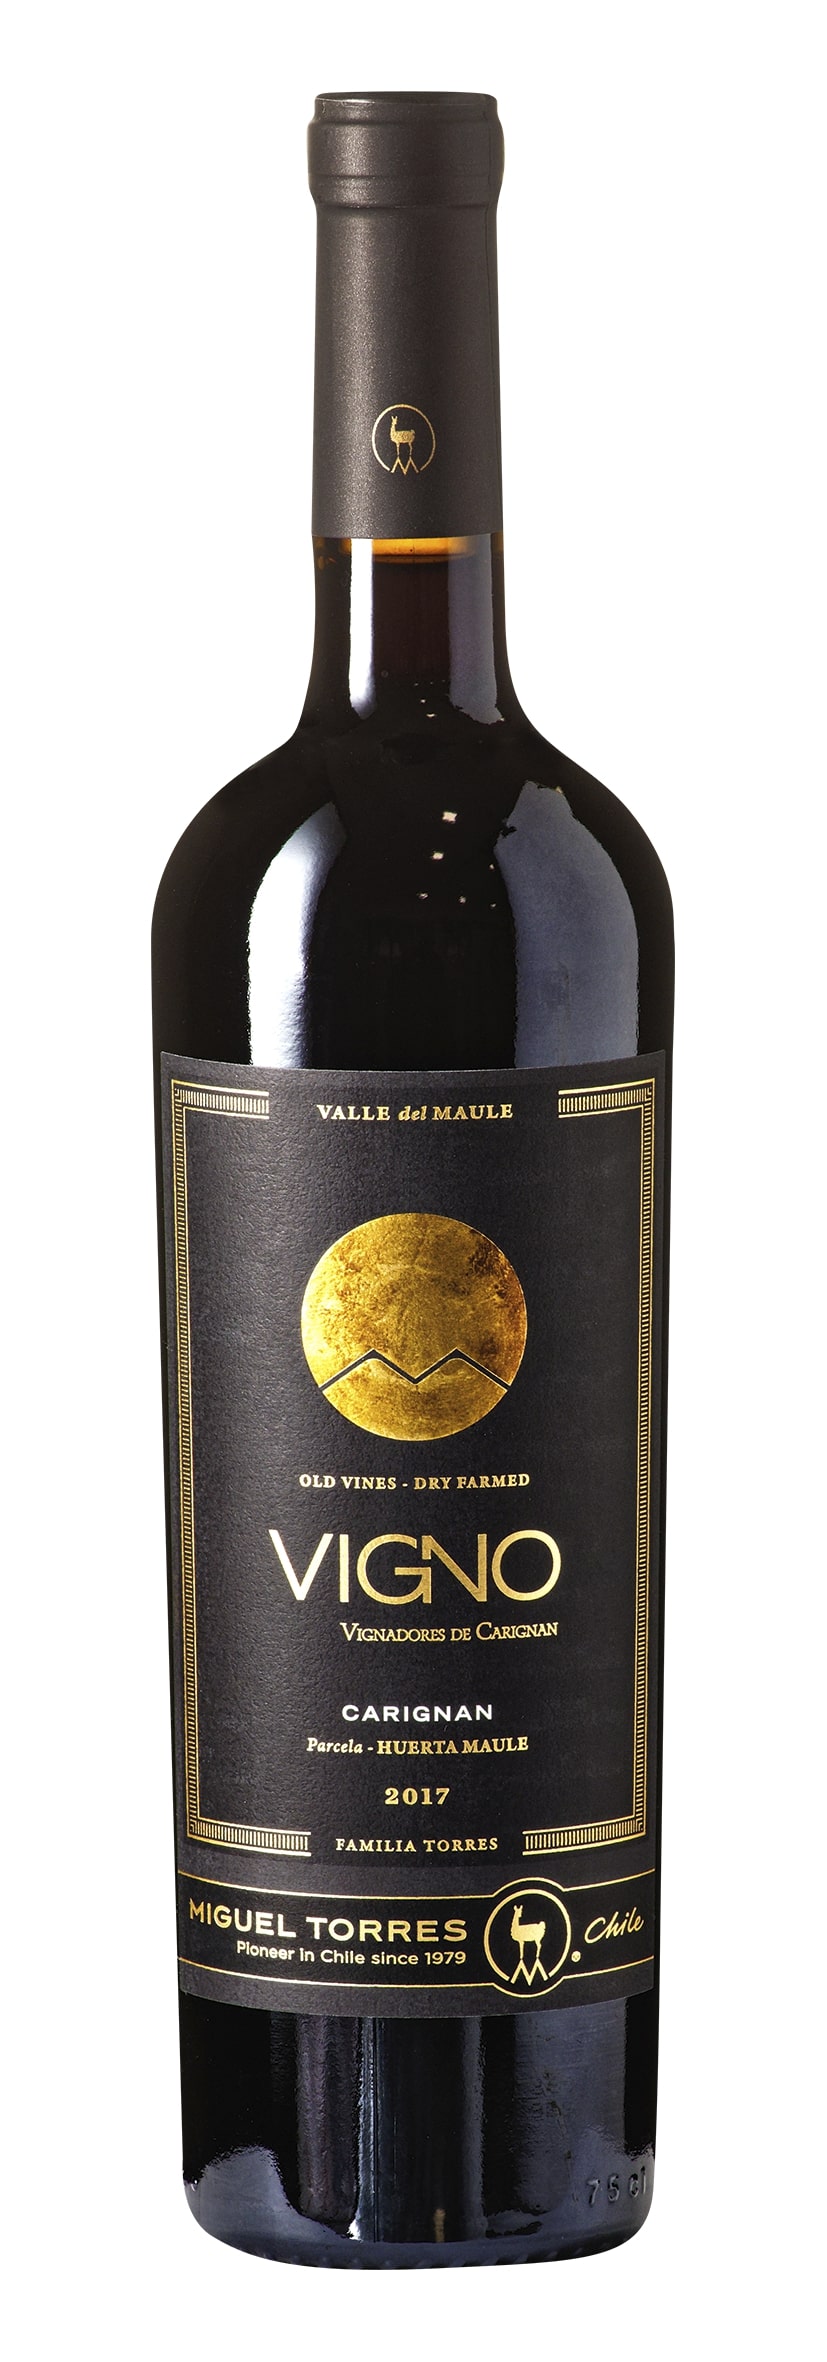 Maule Valley Huerta Maule Carignan VIGNO Old Vines 2017